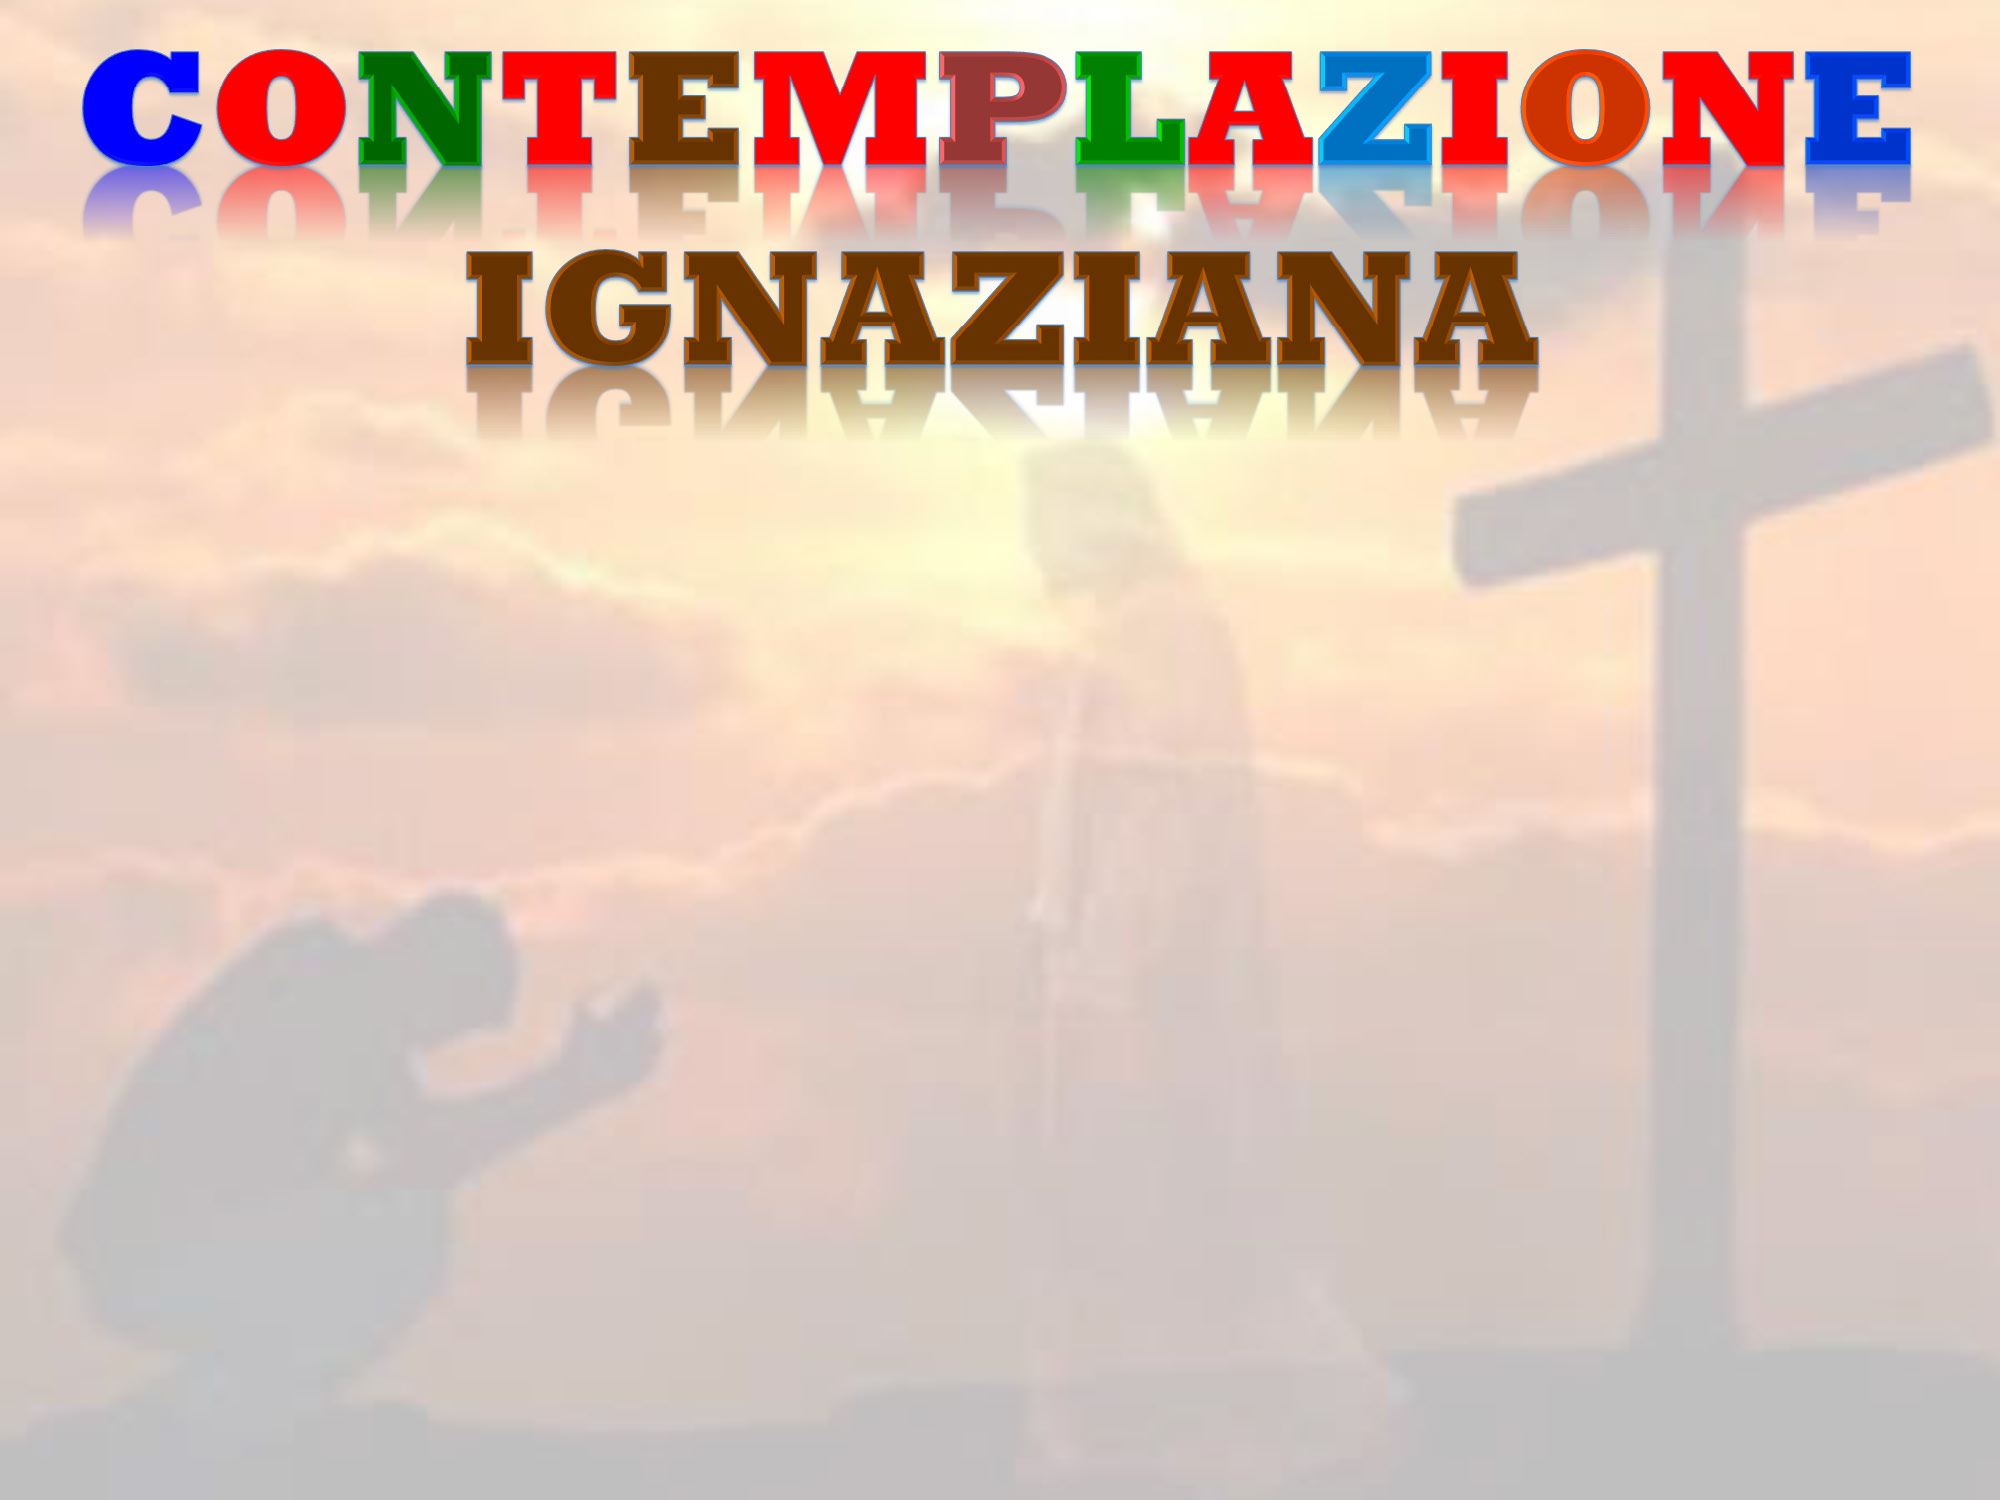 Contemplazione Ignaziana